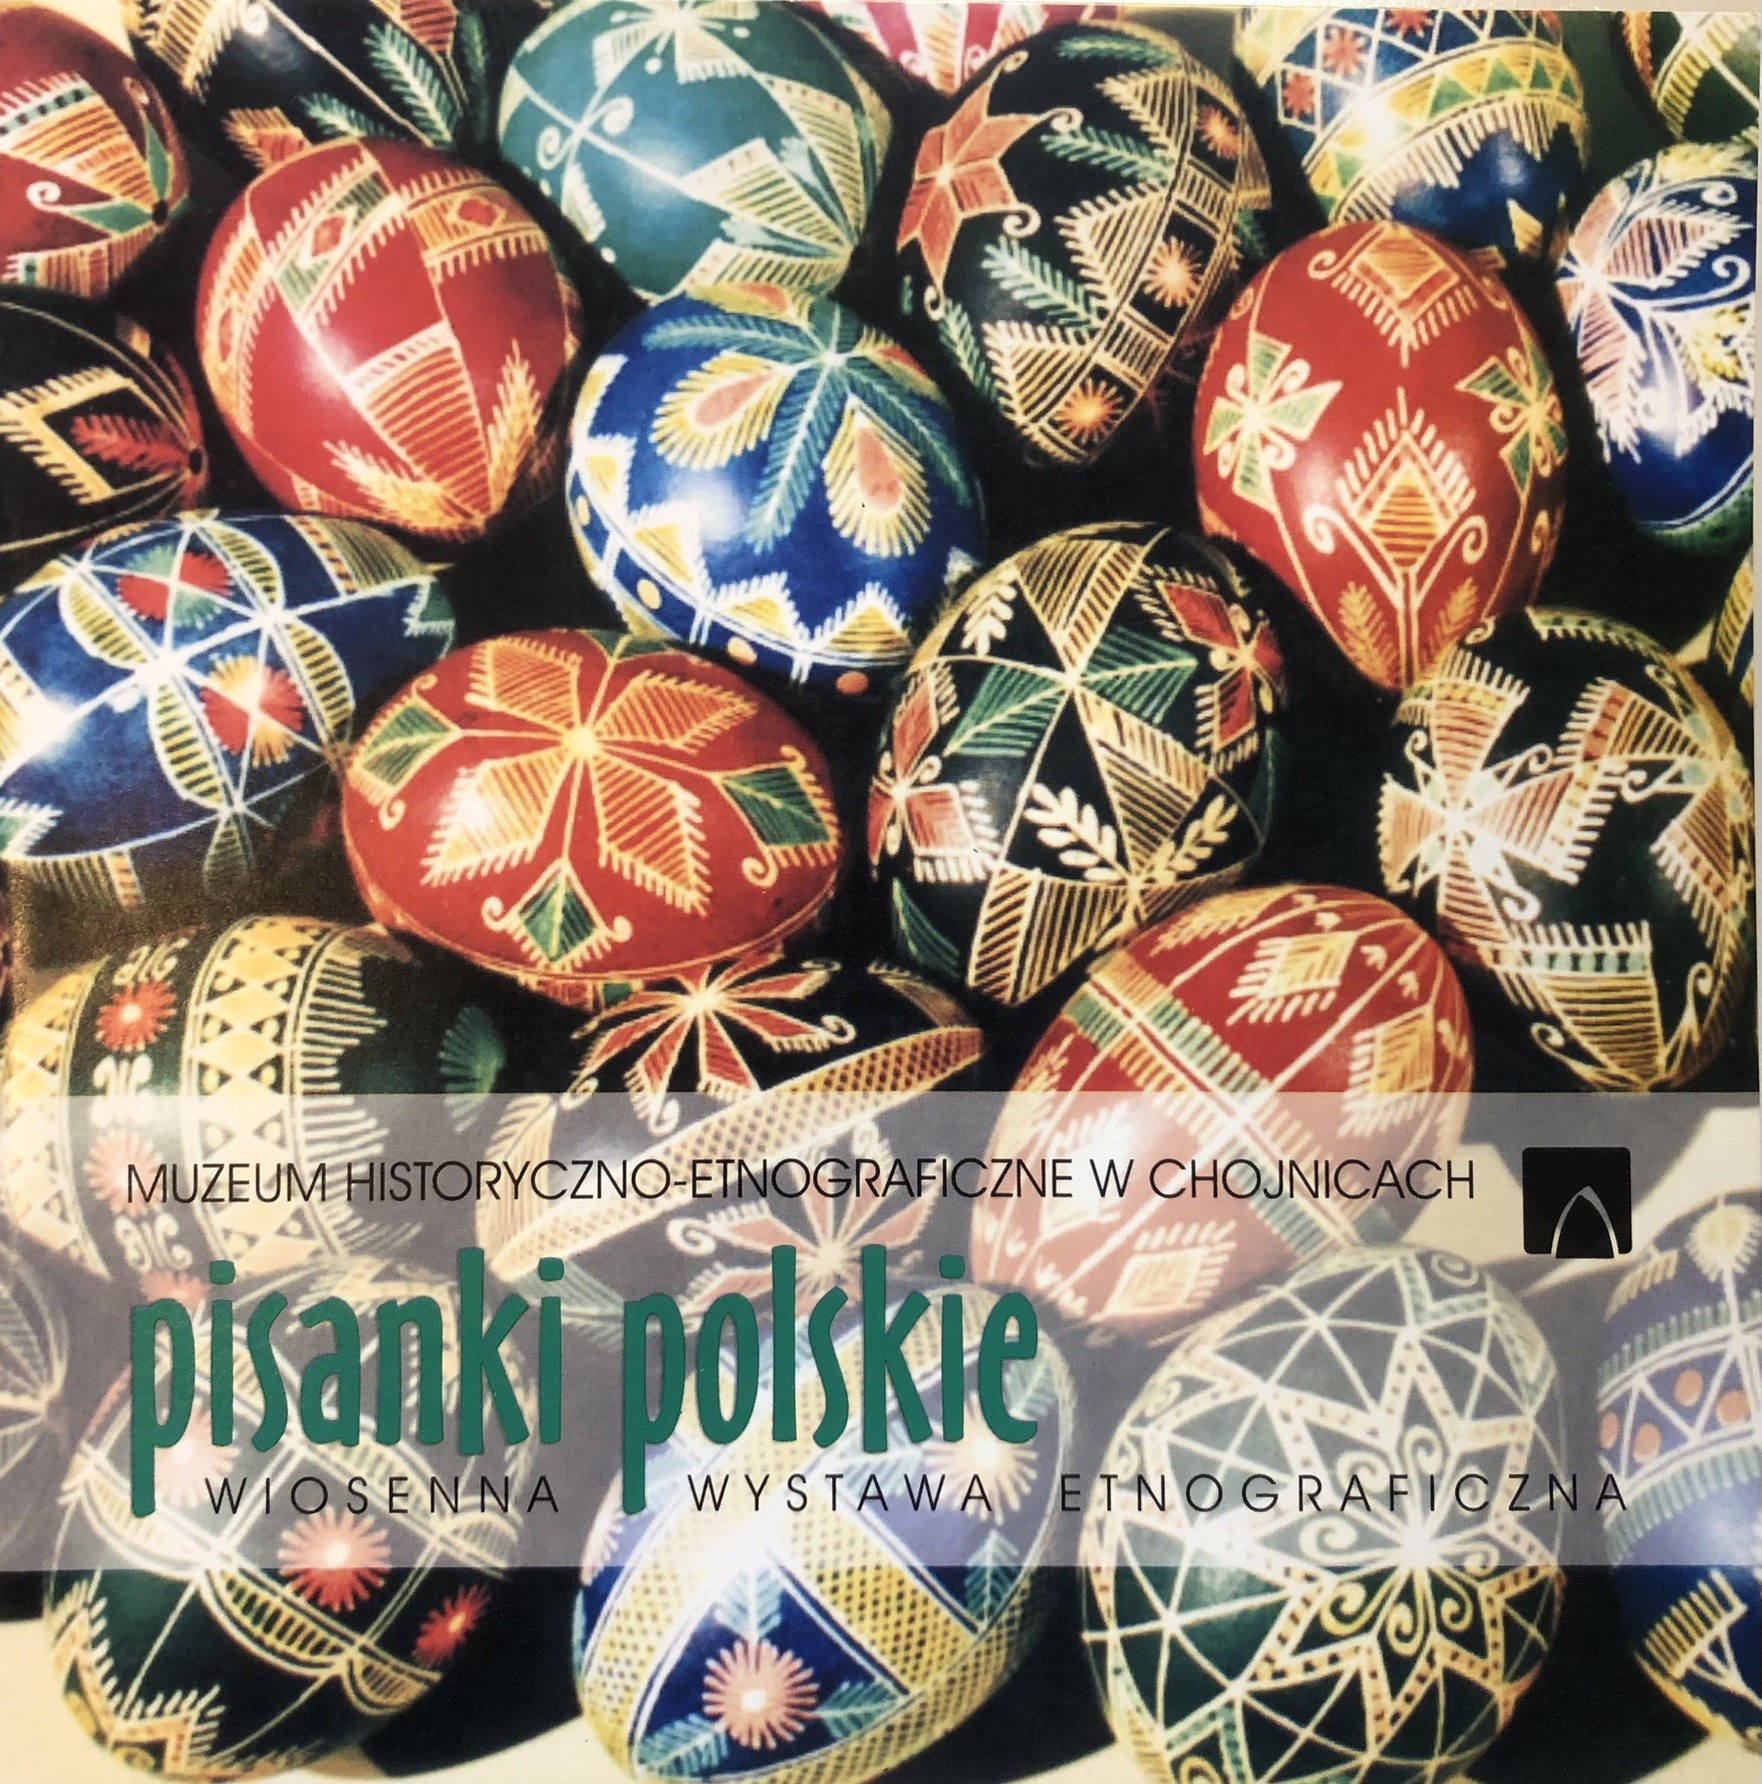 Katalog Pisanki polskie